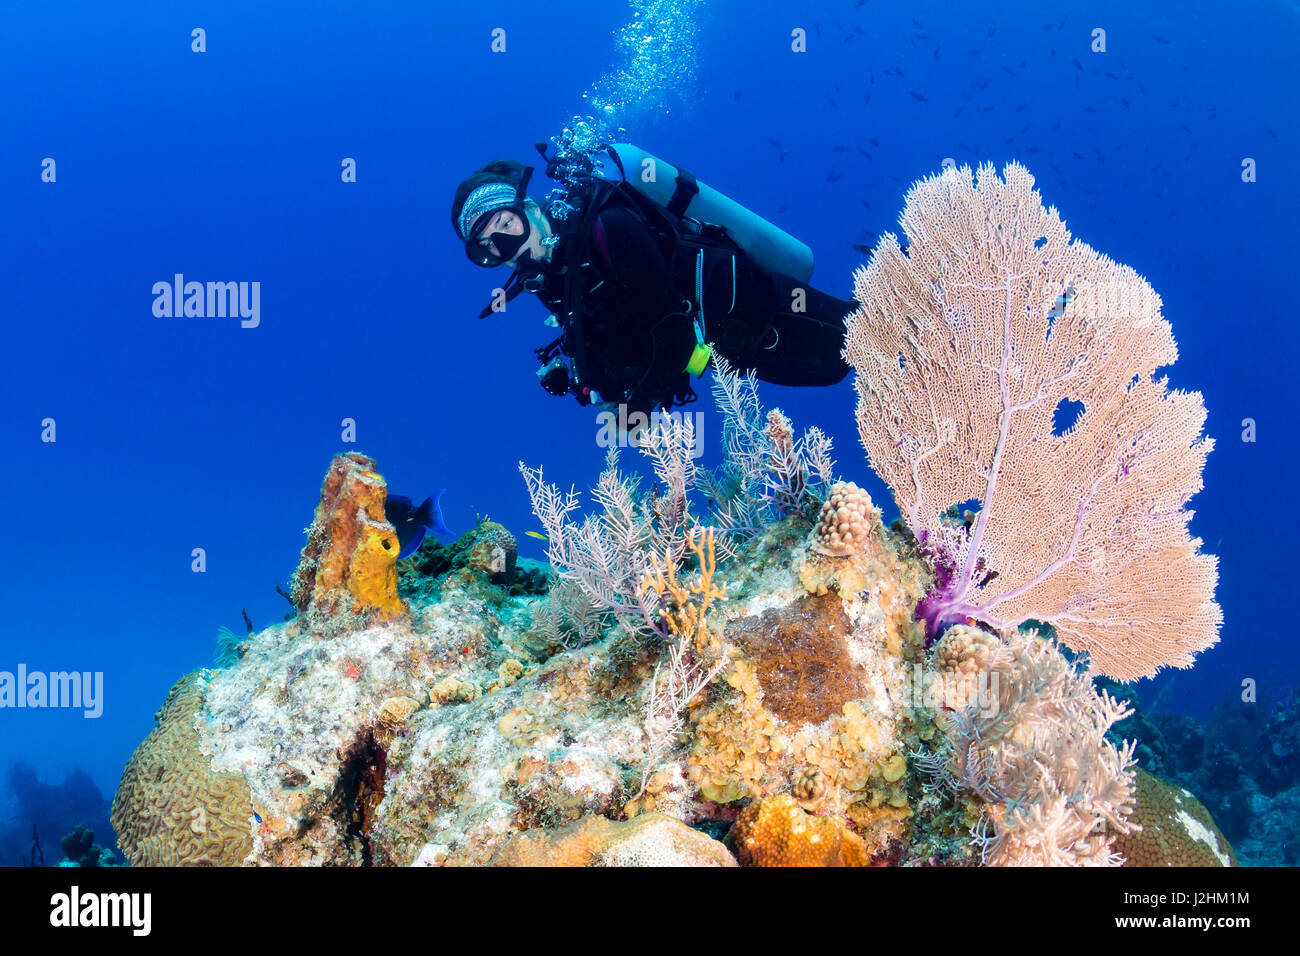 Les jeunes filles près de scuba diver un seafan sur un récif de coraux tropicaux Banque D'Images